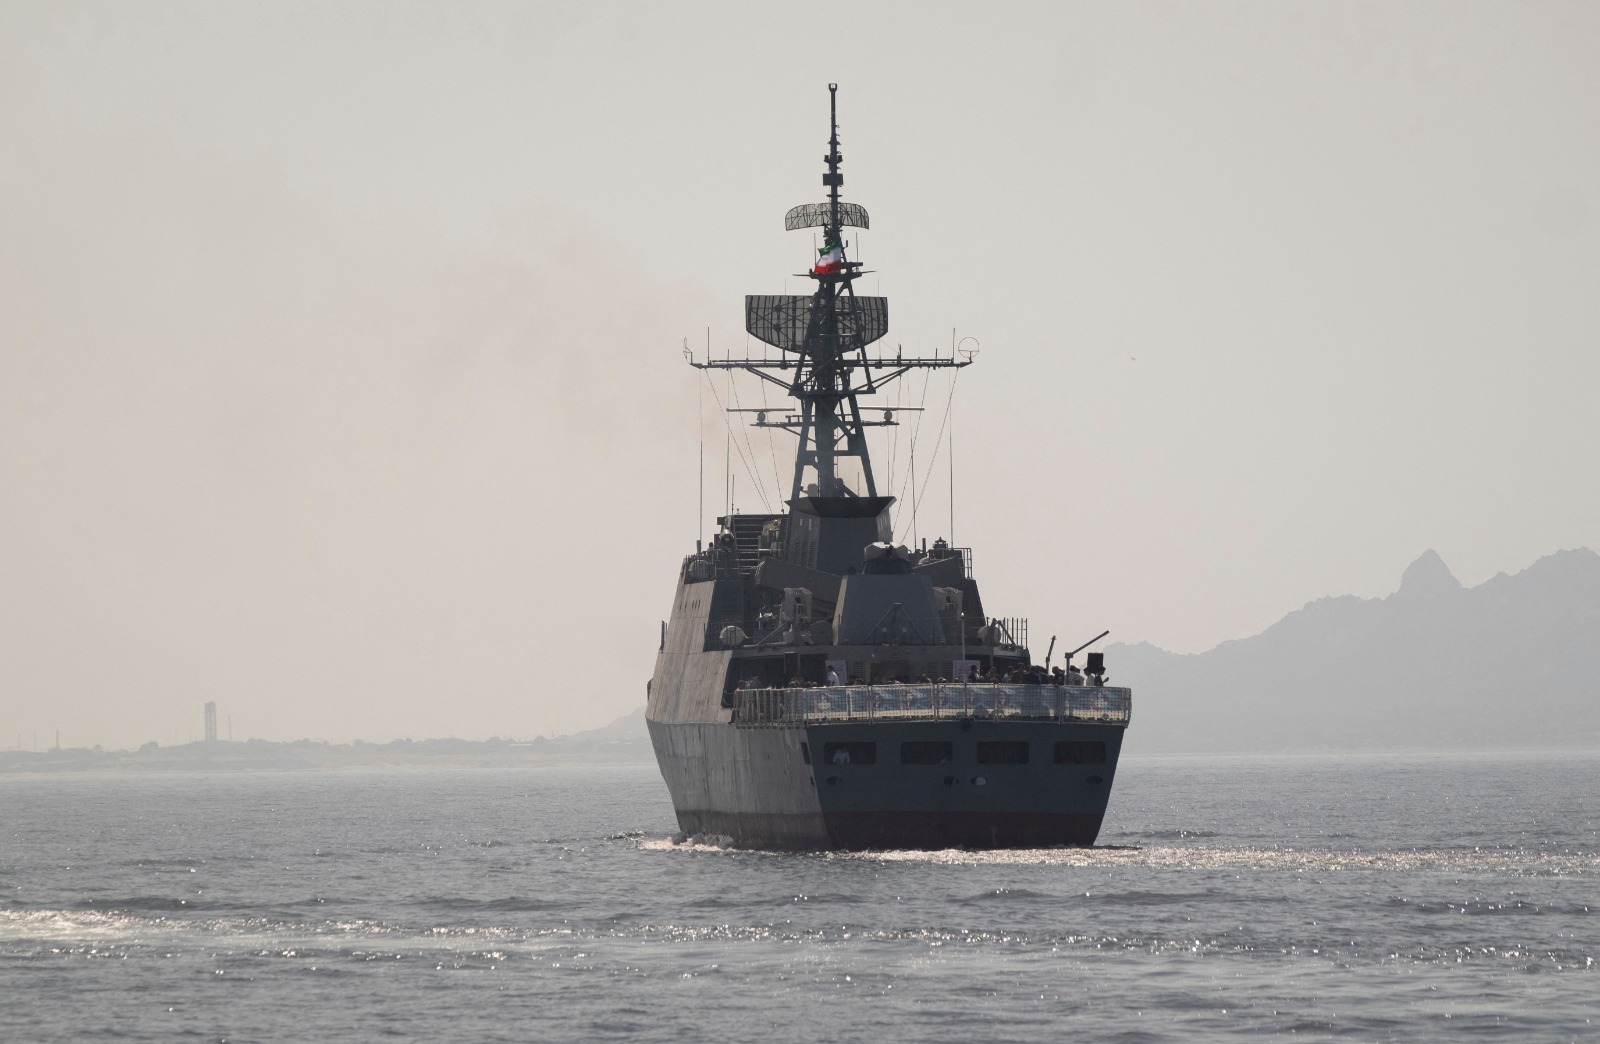 الفرقاطة "سهند" التابعة للبحرية الإيرانية تبحر بالقرب من مضيق هرمز. 1 مايو 2019 - AFP